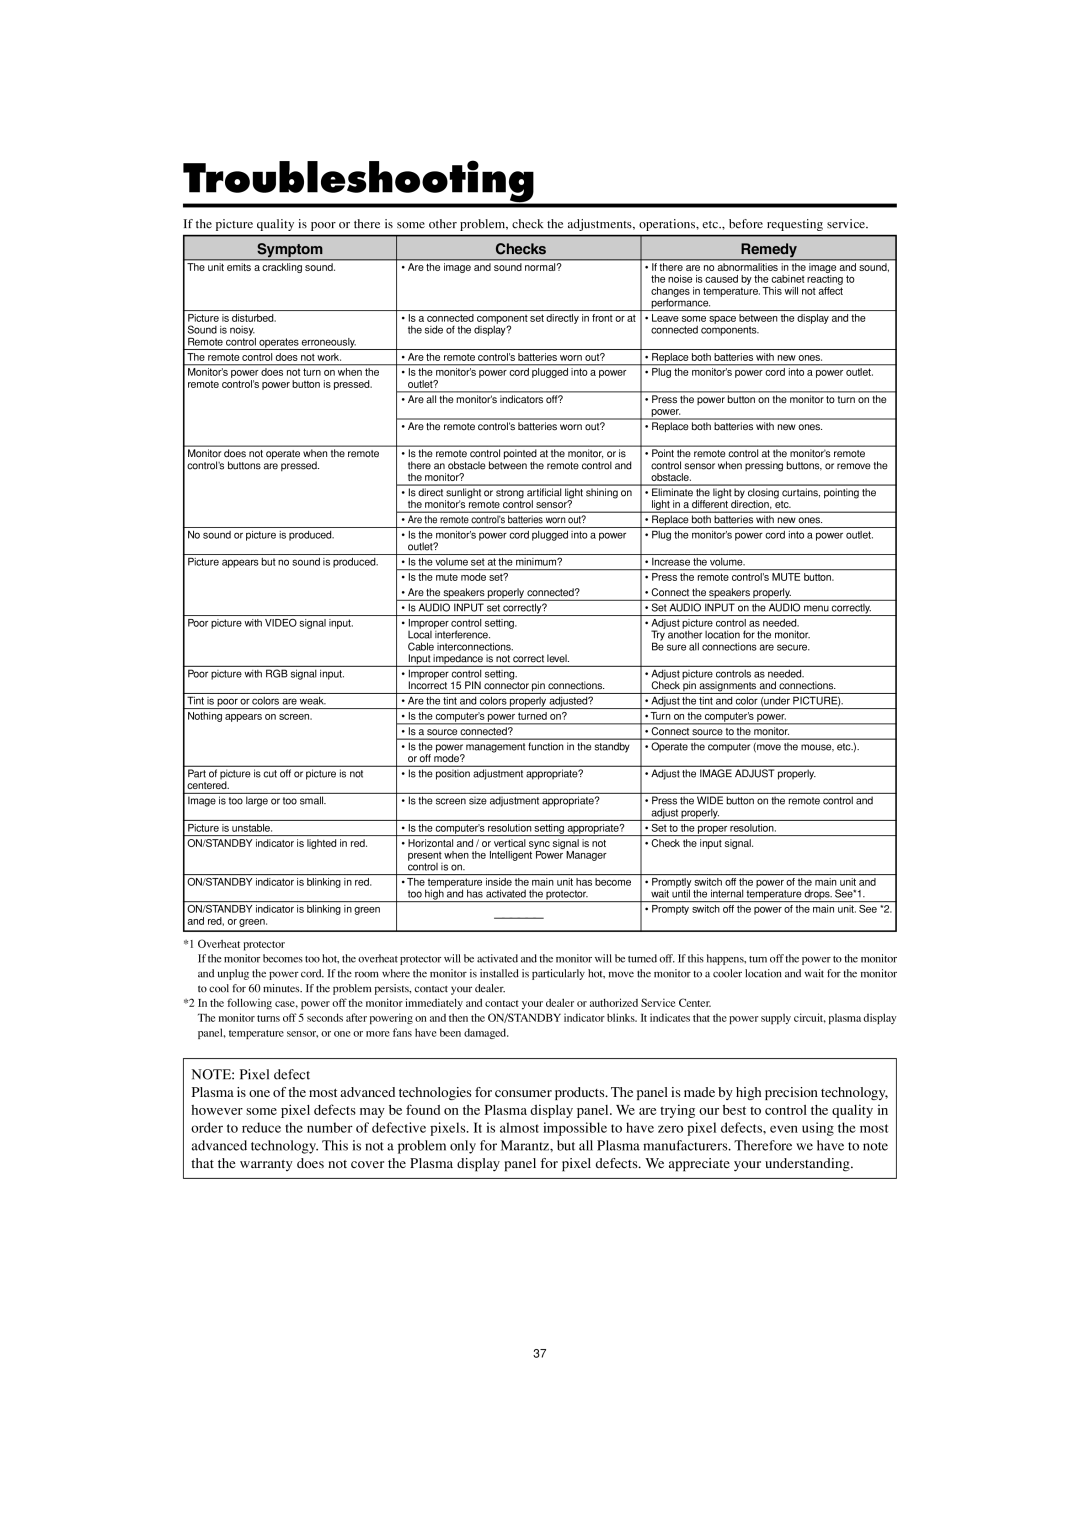 Marantz PD5001 manual Troubleshooting, Symptom, Checks, Remedy 